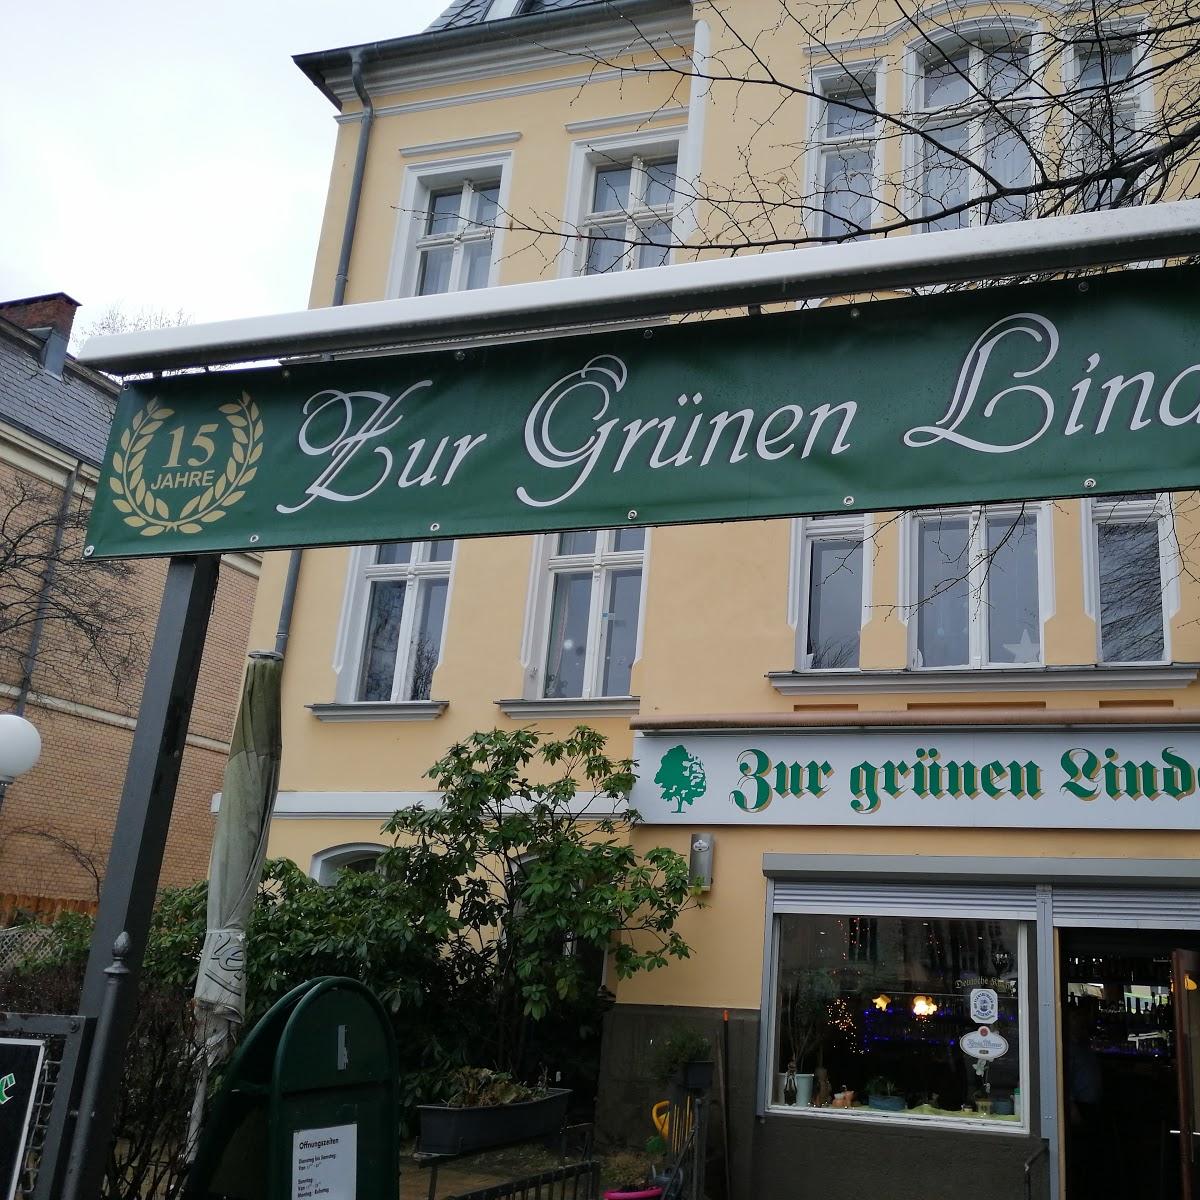 Restaurant "Zur Grünen Linde" in Berlin